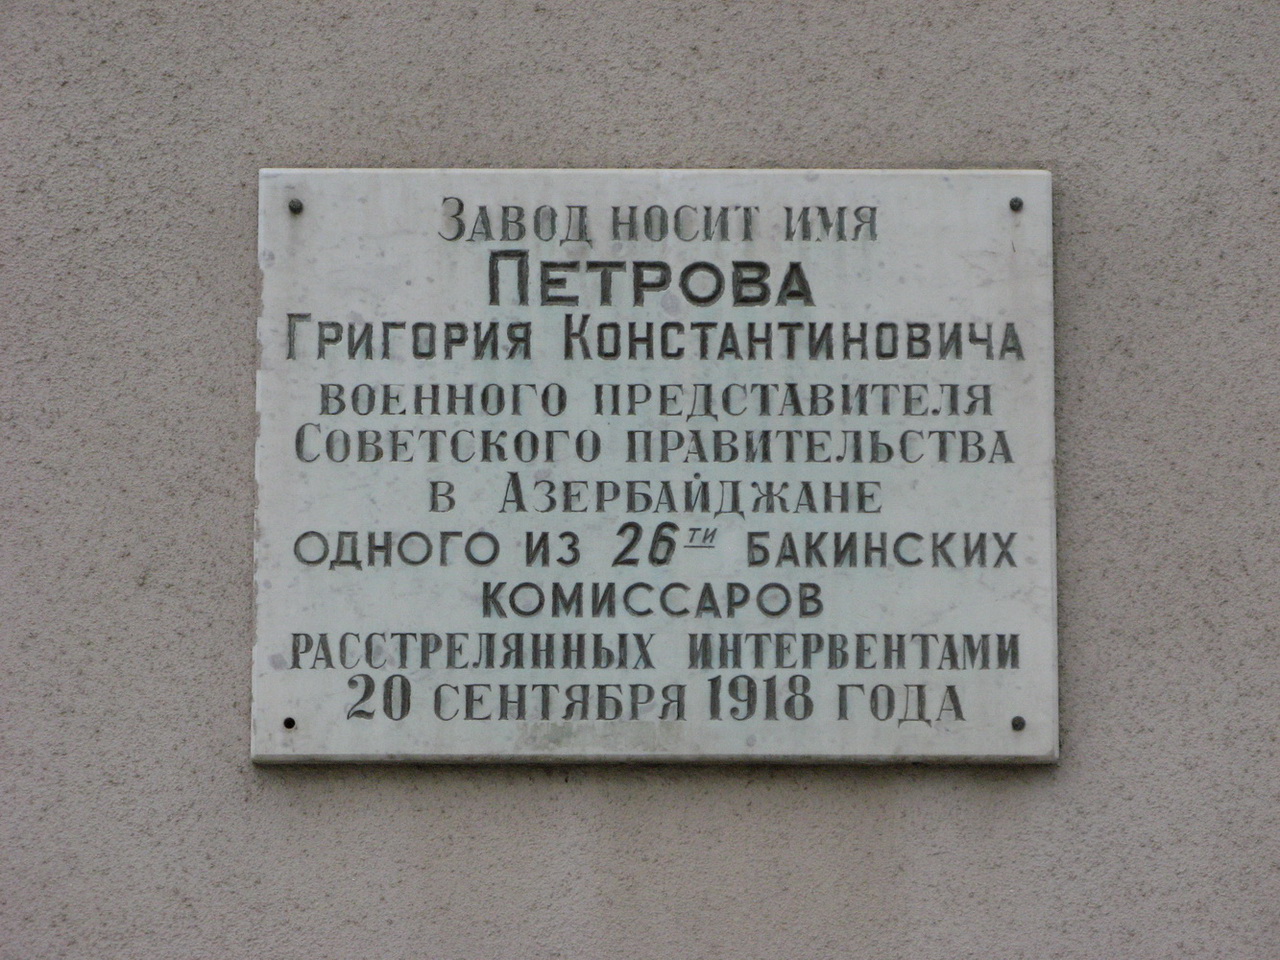 Wolgograd, Электролесовская улица, 45 корп. 9. Wolgograd — Memorial plaques